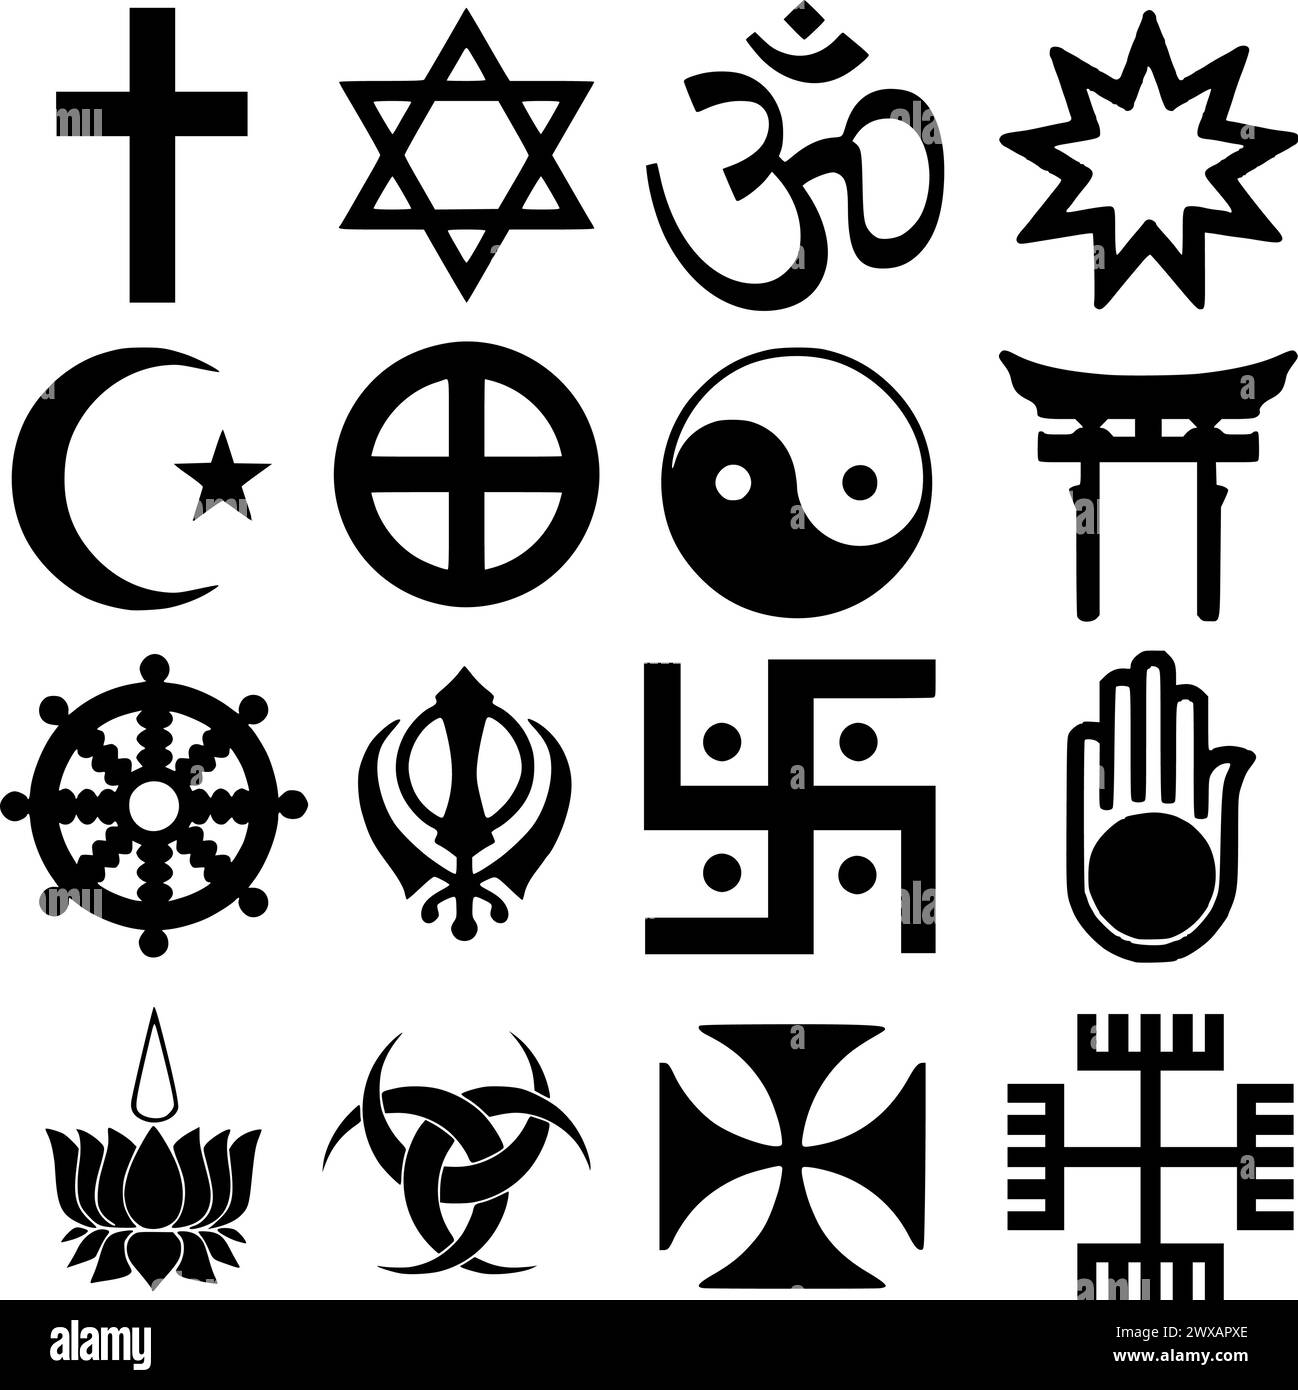 Una serie di simboli religiosi, Croce Cristiana, Stella di Davide, Omkar, Bahai, Mezzaluna, Croce del Sole, Yin-Yang, Shinto, Dharmacakra, Khanda, Swastika, Ahinsa Illustrazione Vettoriale